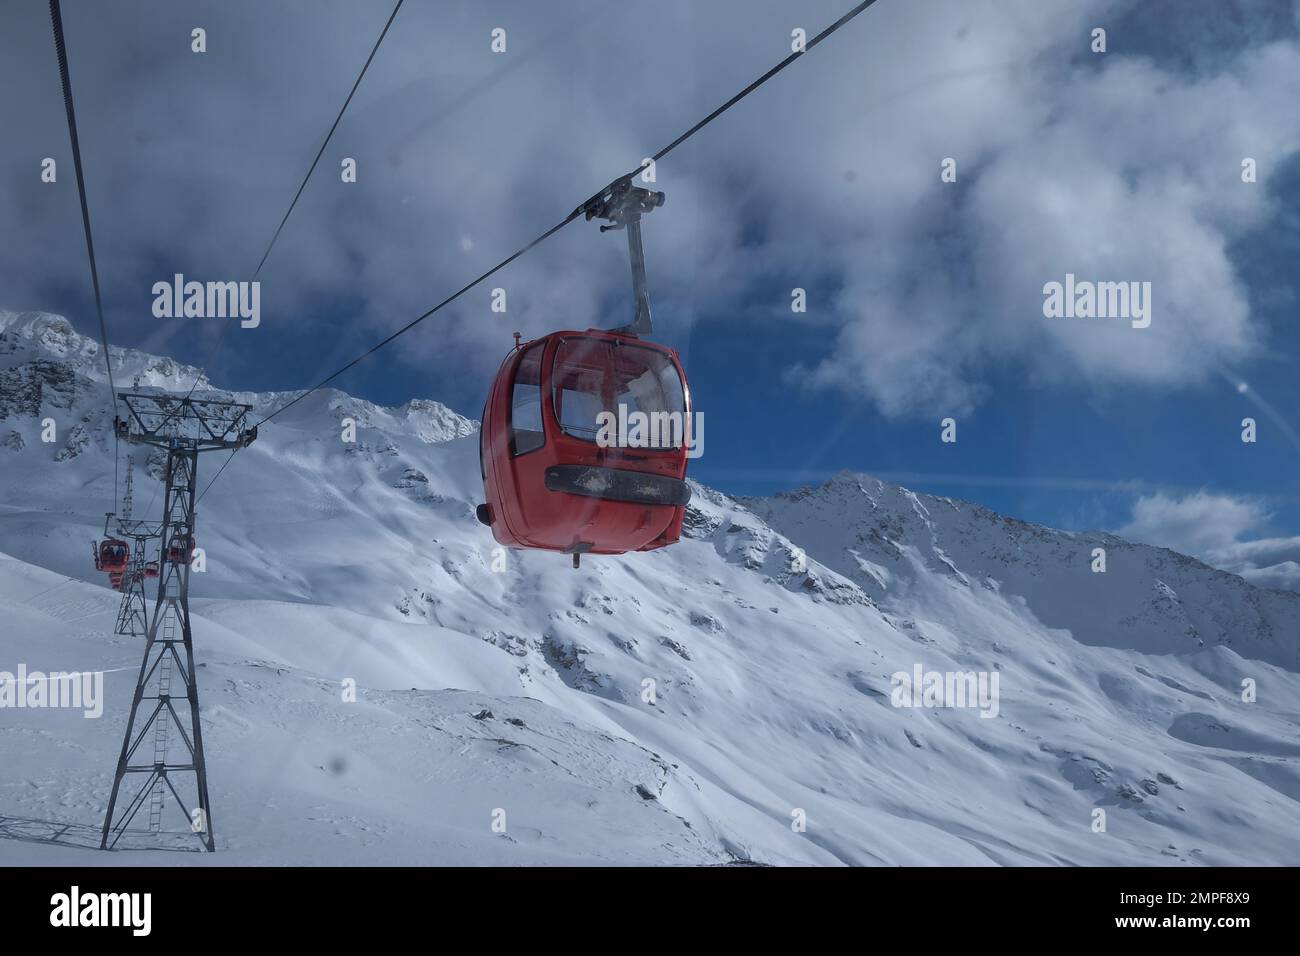 Michael Bunel / le Pictorium - Sci nelle Alpi - 3/1/2016 - Savoia / Francia / la plagne - illustrazione vacanze sci. la funivia / telesieg Foto Stock